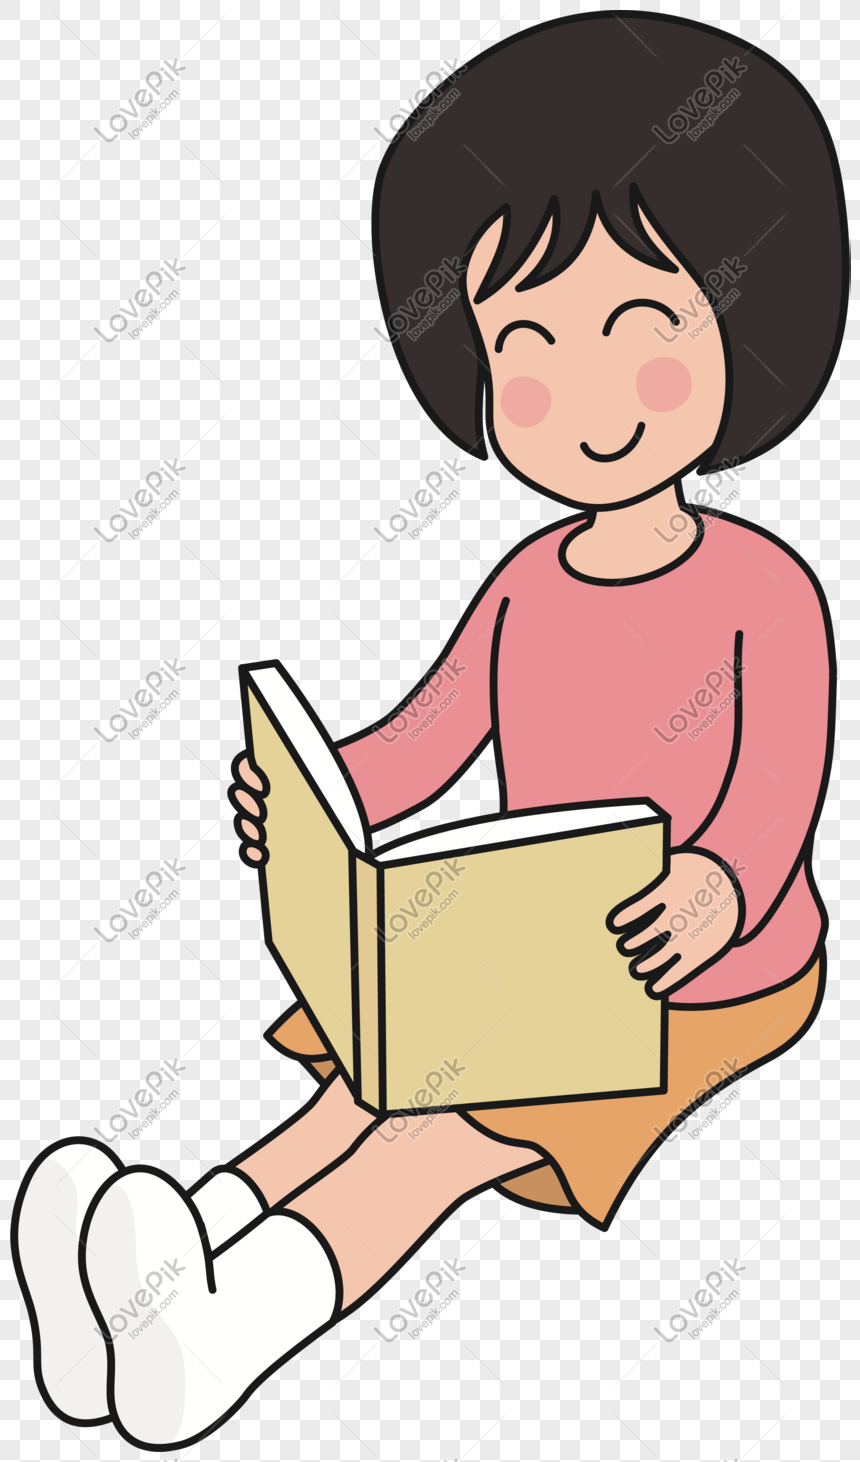 Cô gái tóc ngắn, đọc sách - vẻ đẹp giản dị nhưng rất đầy cảm hứng này chắc chắn sẽ khiến bạn muốn đọc sách ngay lập tức! Cùng xem hình ảnh để tận hưởng niềm đam mê đọc sách, bạn nhé!